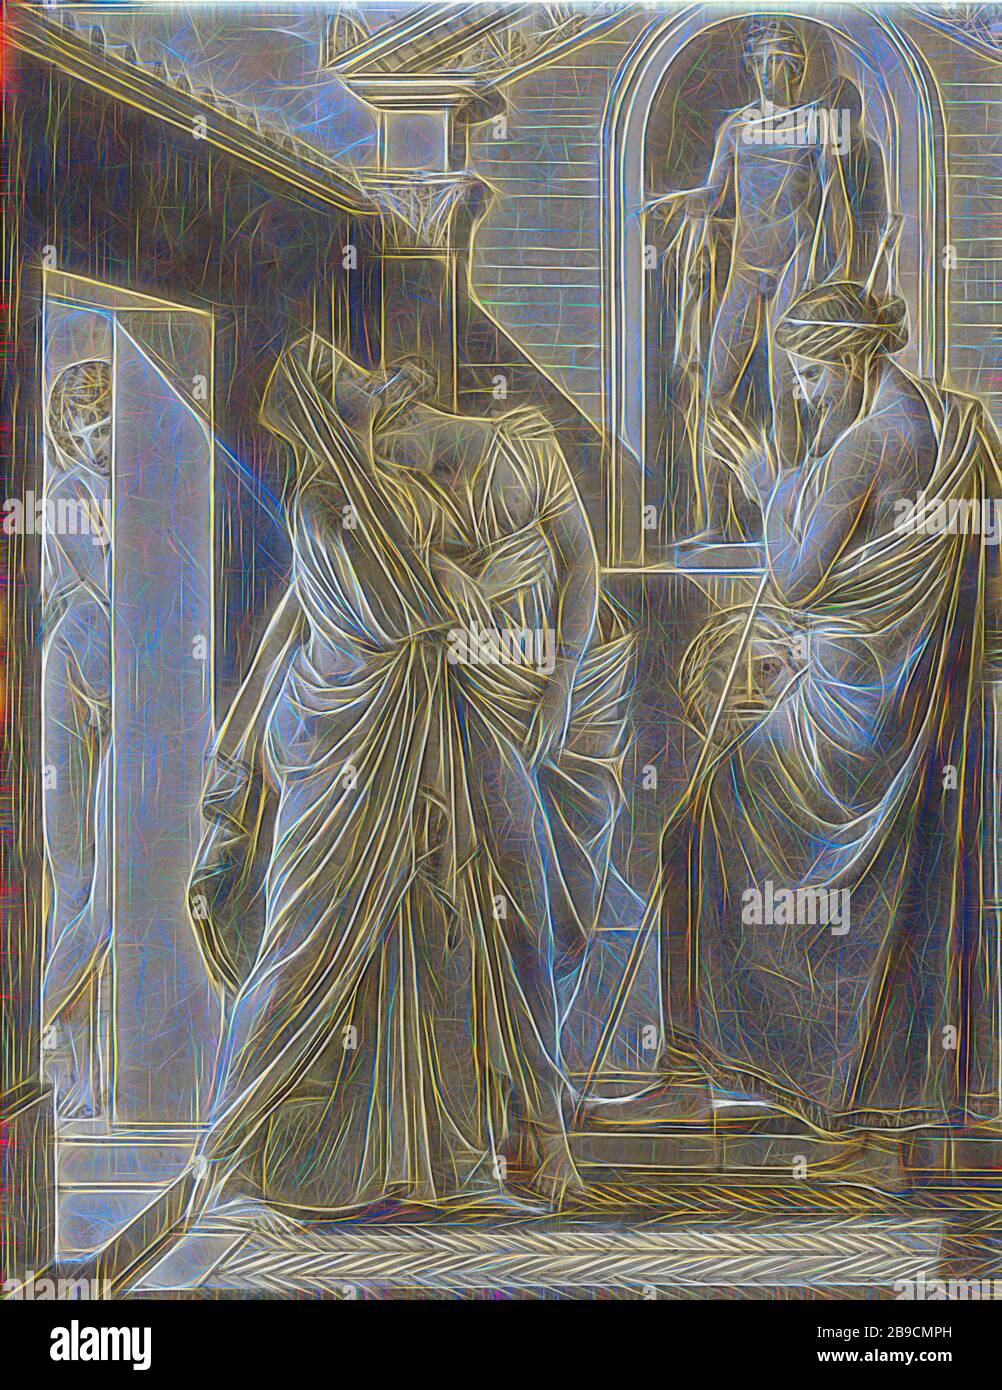 Le Père de Psyche Consulting l'Oracle d'Apollon, le baron François-Pascal-Simon Gérard (français, né en Italie, 1770 - 1837), vers 1796, encre plume et marron et grise, lavage gris et brun, gouache blanc, Et sous-dessin de craie noire, 18,9 x 14,6 cm (7 7,16 x 5 3,4 po, repensé par Gibon, design de gai gai chaud de luminosité et de rayons de lumière radiance. L'art classique réinventé avec une touche moderne. La photographie inspirée du futurisme, qui embrasse l'énergie dynamique de la technologie moderne, du mouvement, de la vitesse et révolutionne la culture. Banque D'Images